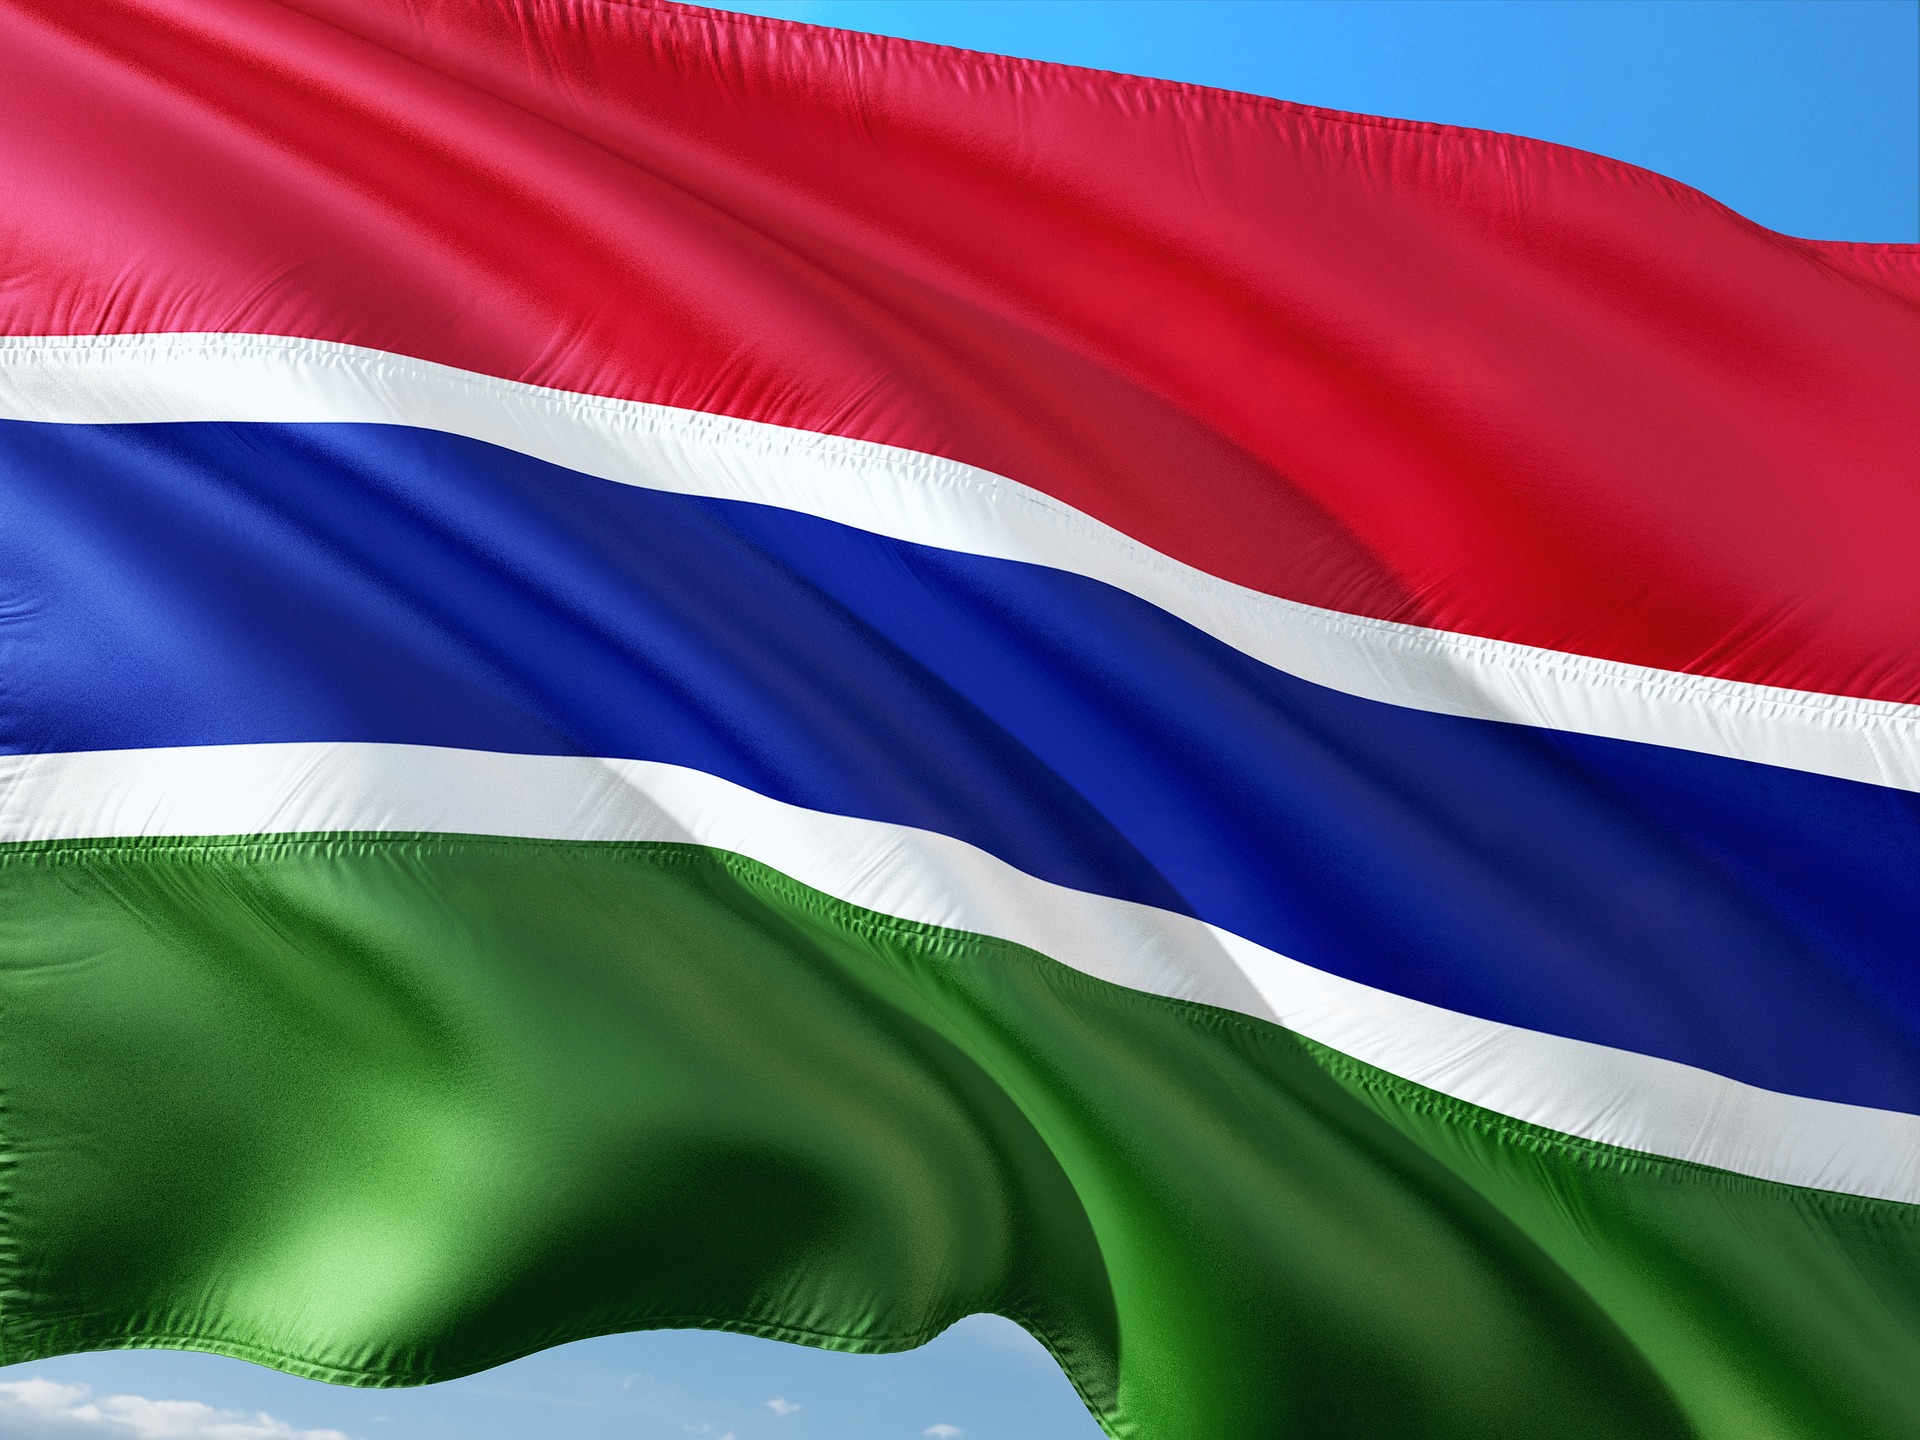 El gobierno de Gambia ingresa dinero por error a más de 27.000 funcionarios